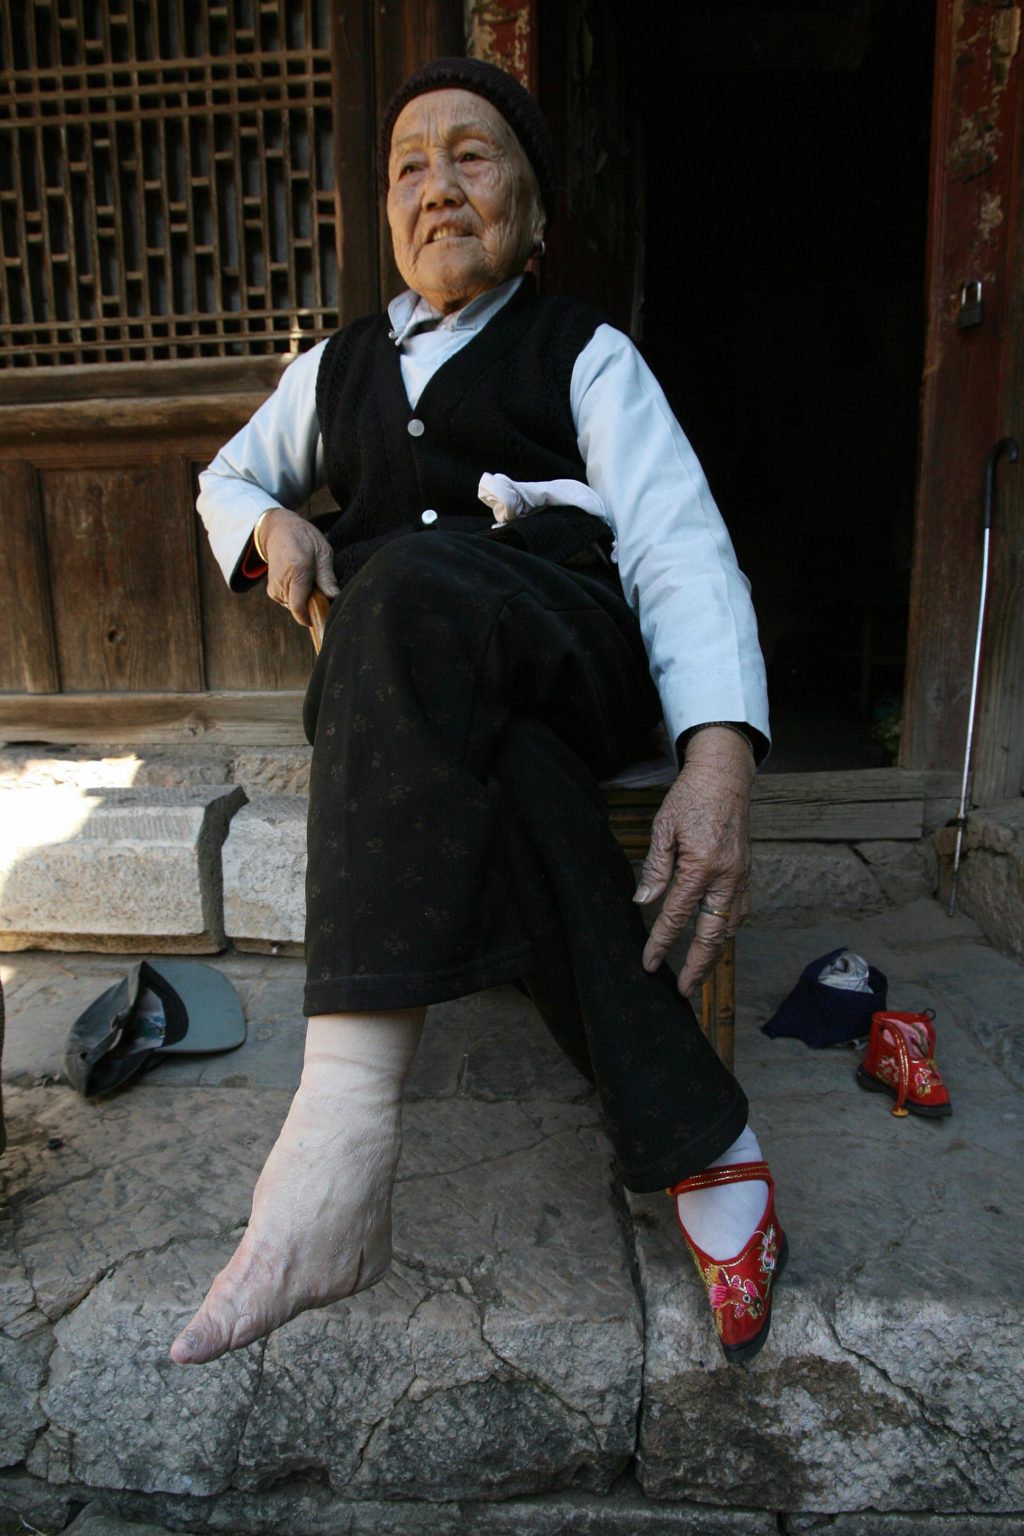 бинтование ног в древнем китае золотой лотос